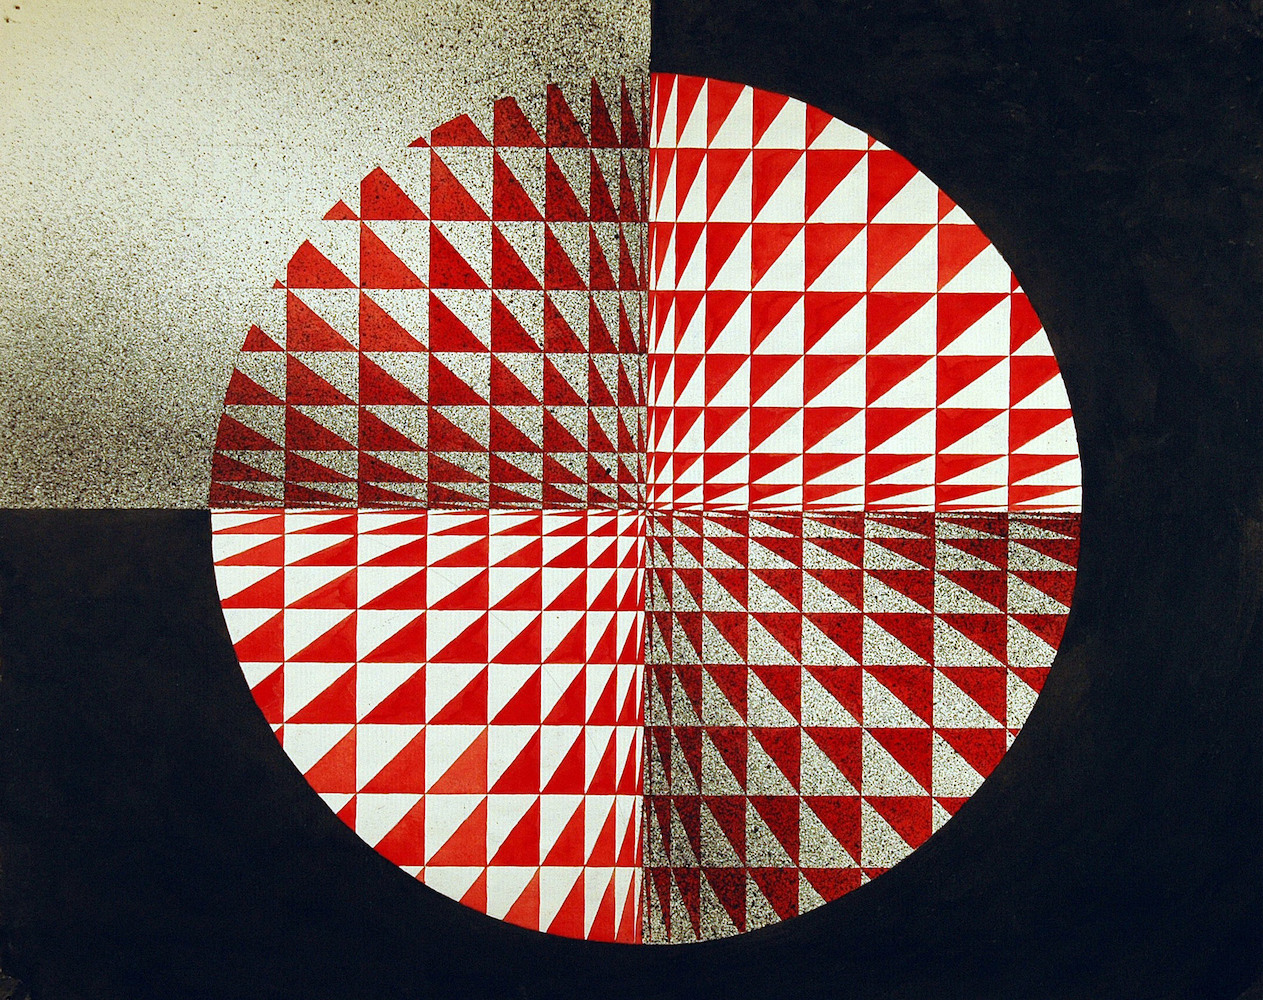 Kreis mit roten Dreiecken auf schwarzen Flächen*